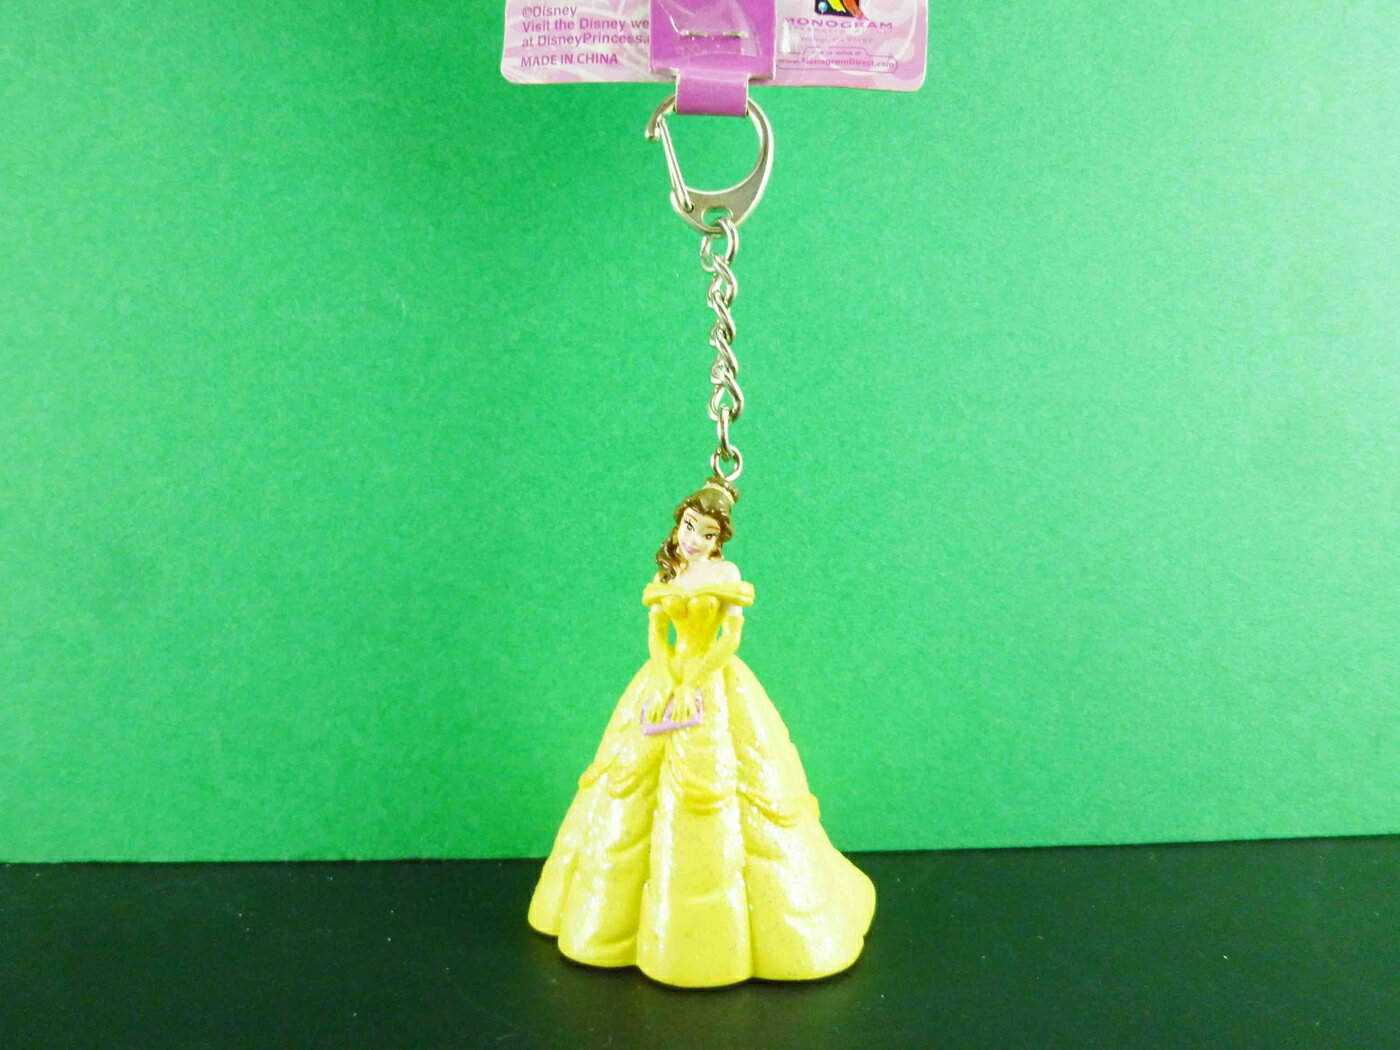 【震撼精品百貨】公主 系列Princess 立體造型鑰匙圈-貝兒圖案 震撼日式精品百貨